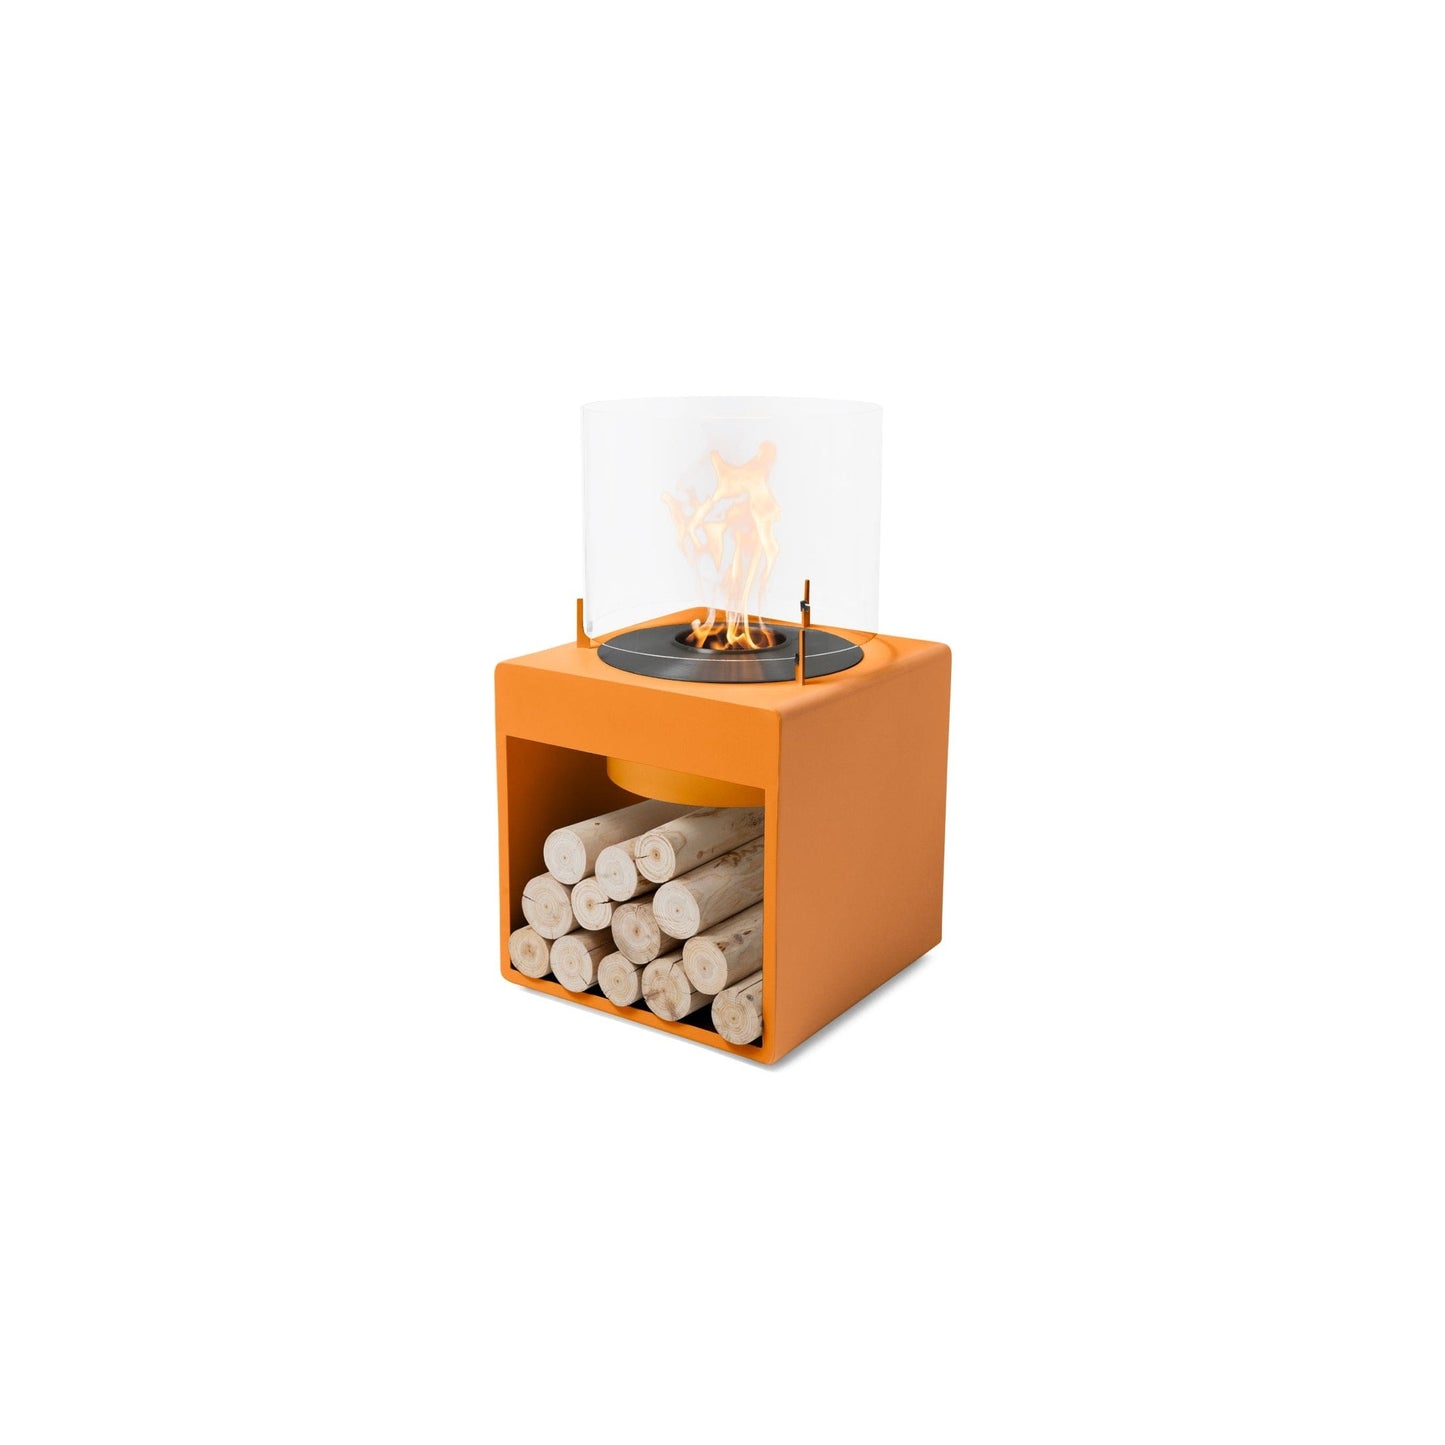 EcoSmart Fire POP 8L 31" Orange Freestanding Designer Fireplace with Black Burner by MAD Design Group